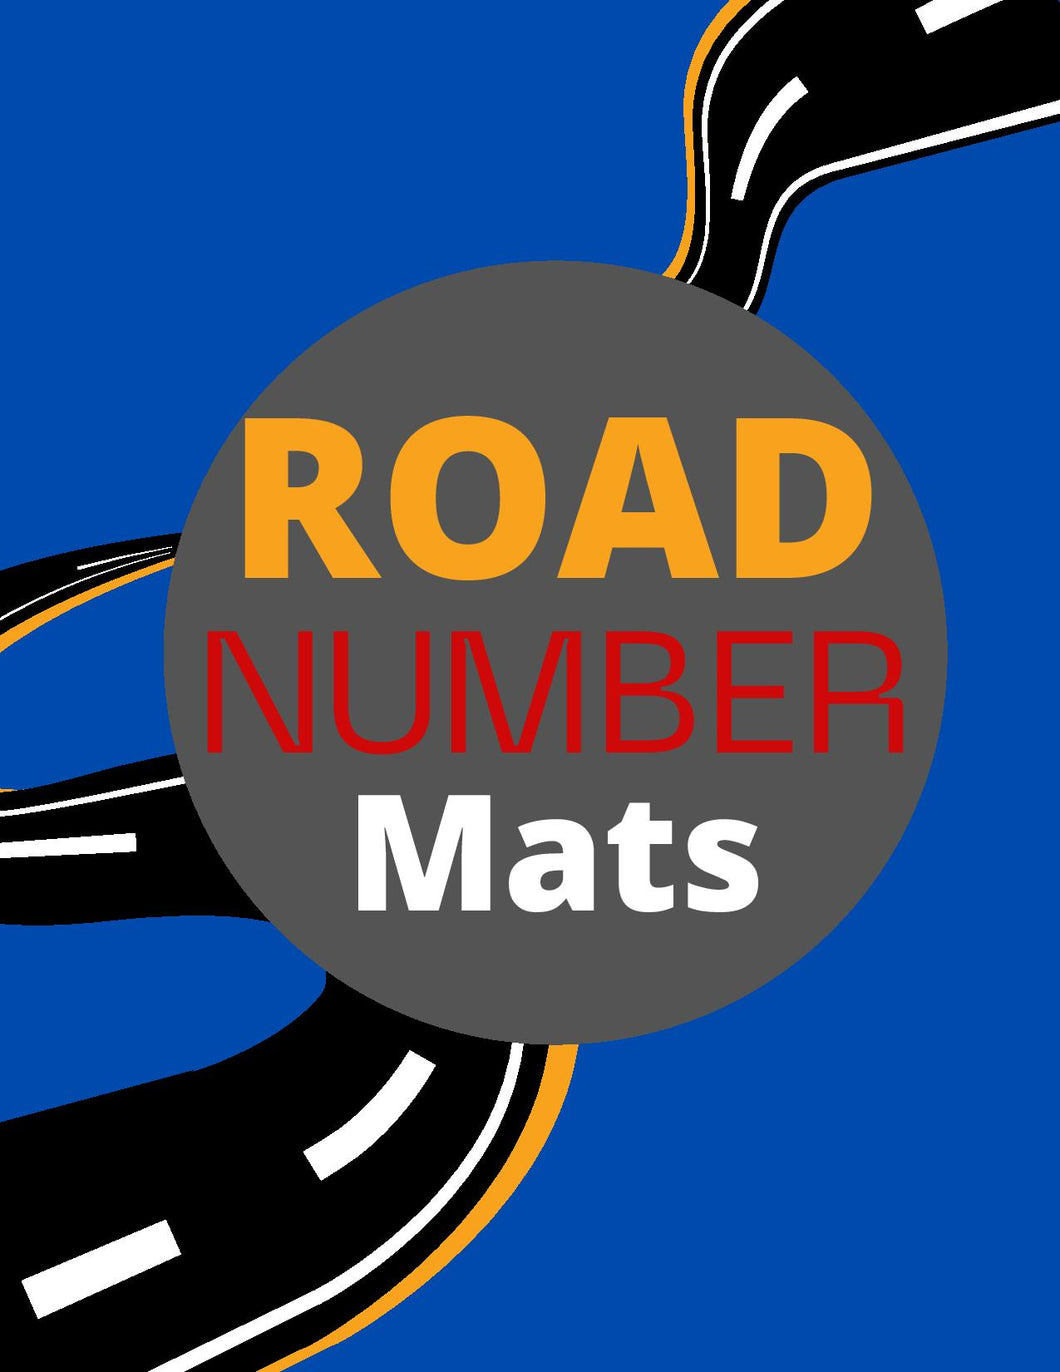 Road Number Mats